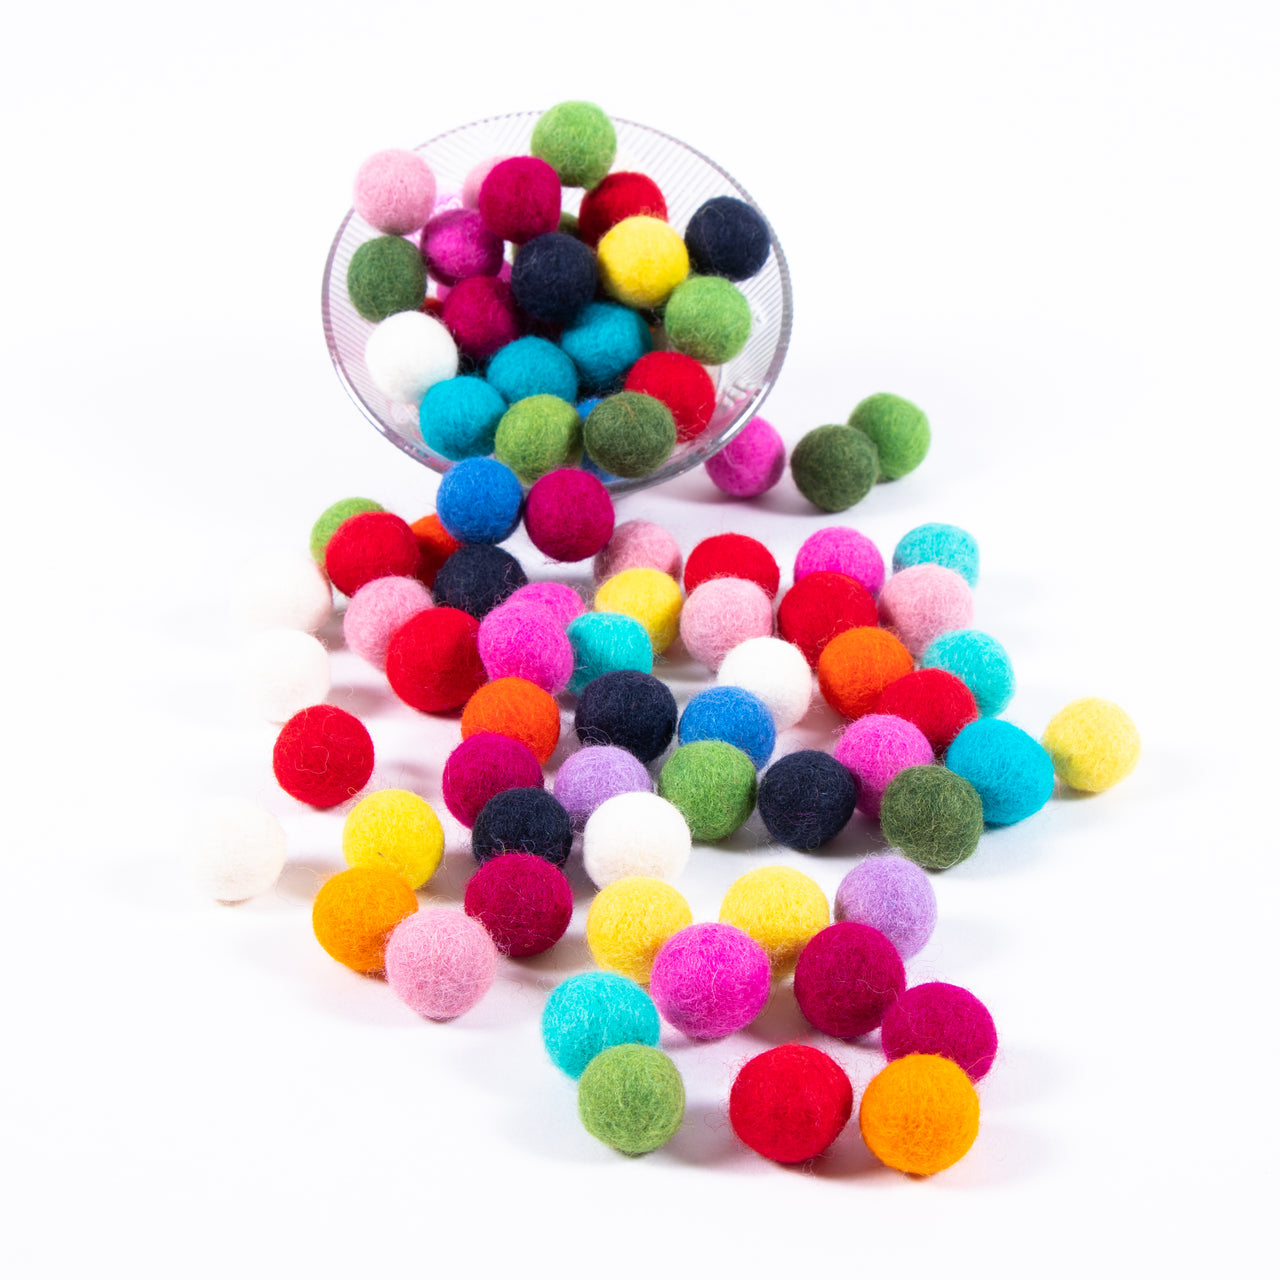 4 cm Felt Balls/Felt Balls Wholesale